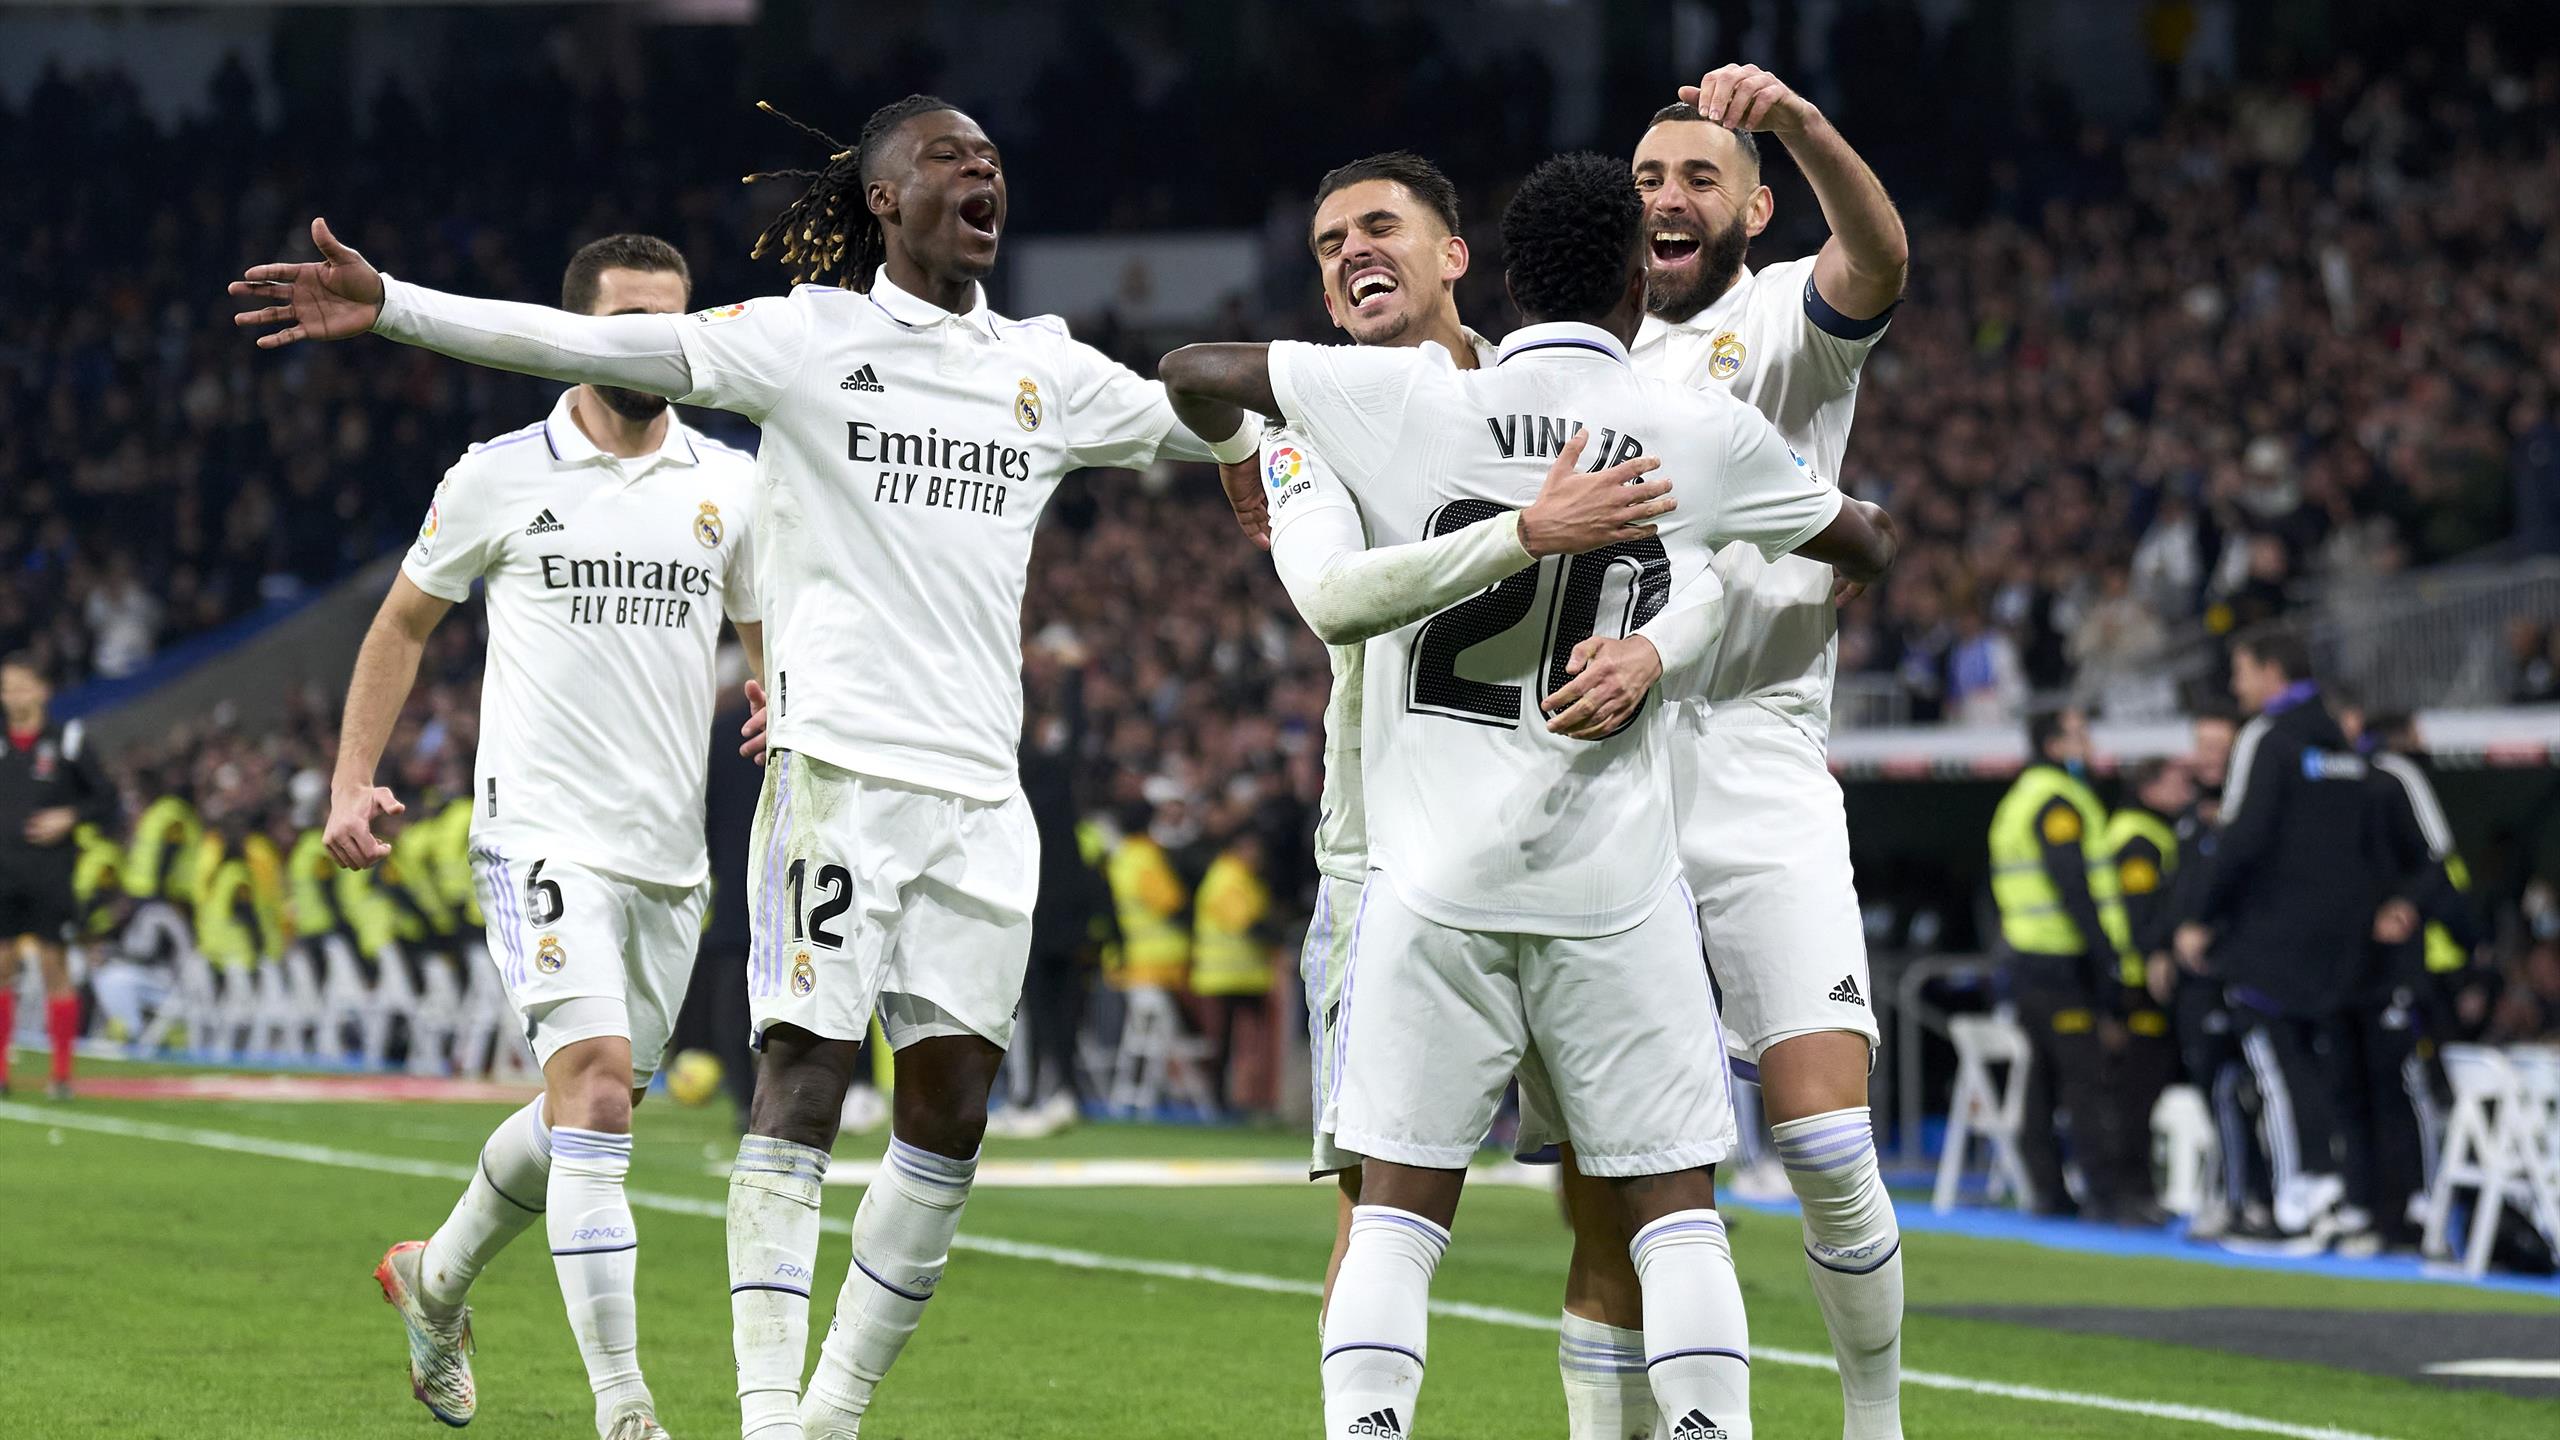 Майорка – Реал Мадрид прогноз на матч Ла Лиги 5 февраля 2023 года